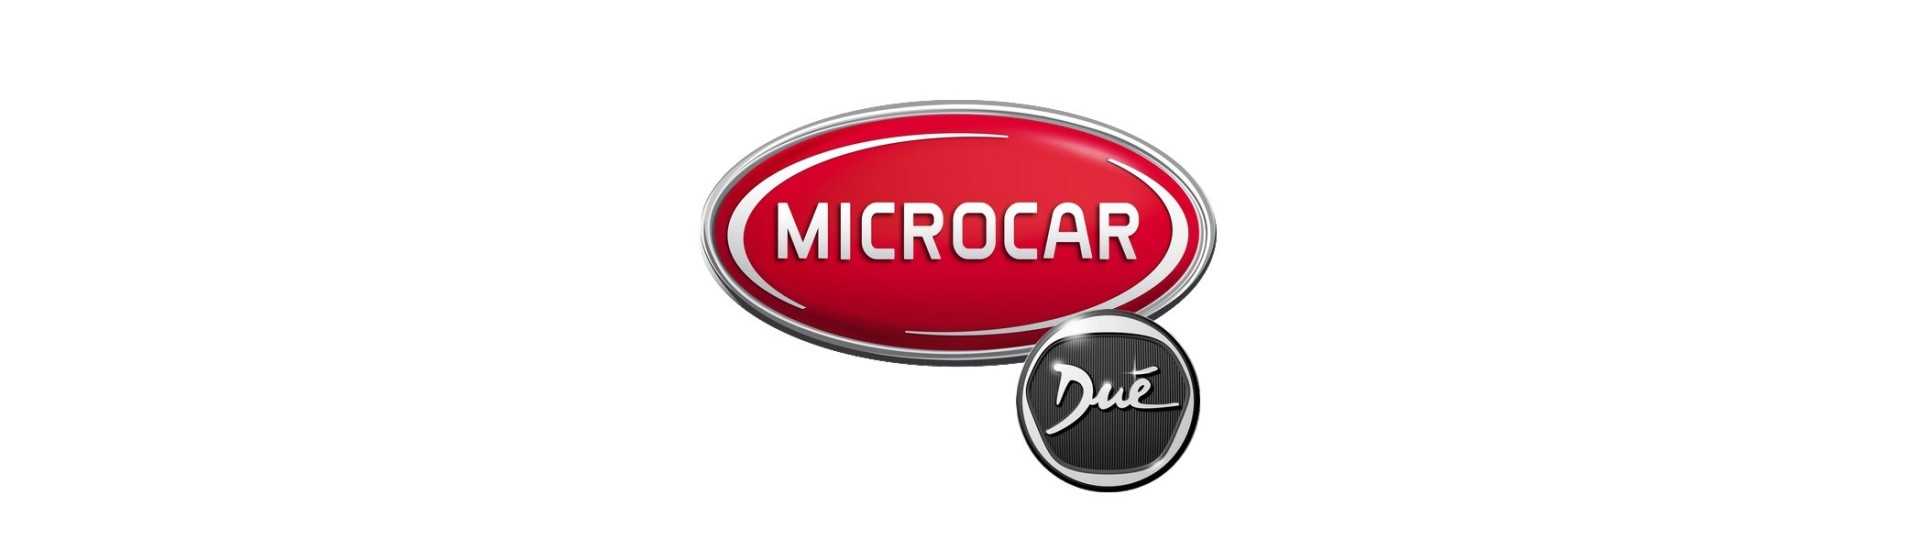 Catadioptre al mejor precio para coche sin permiso Microcar Dué